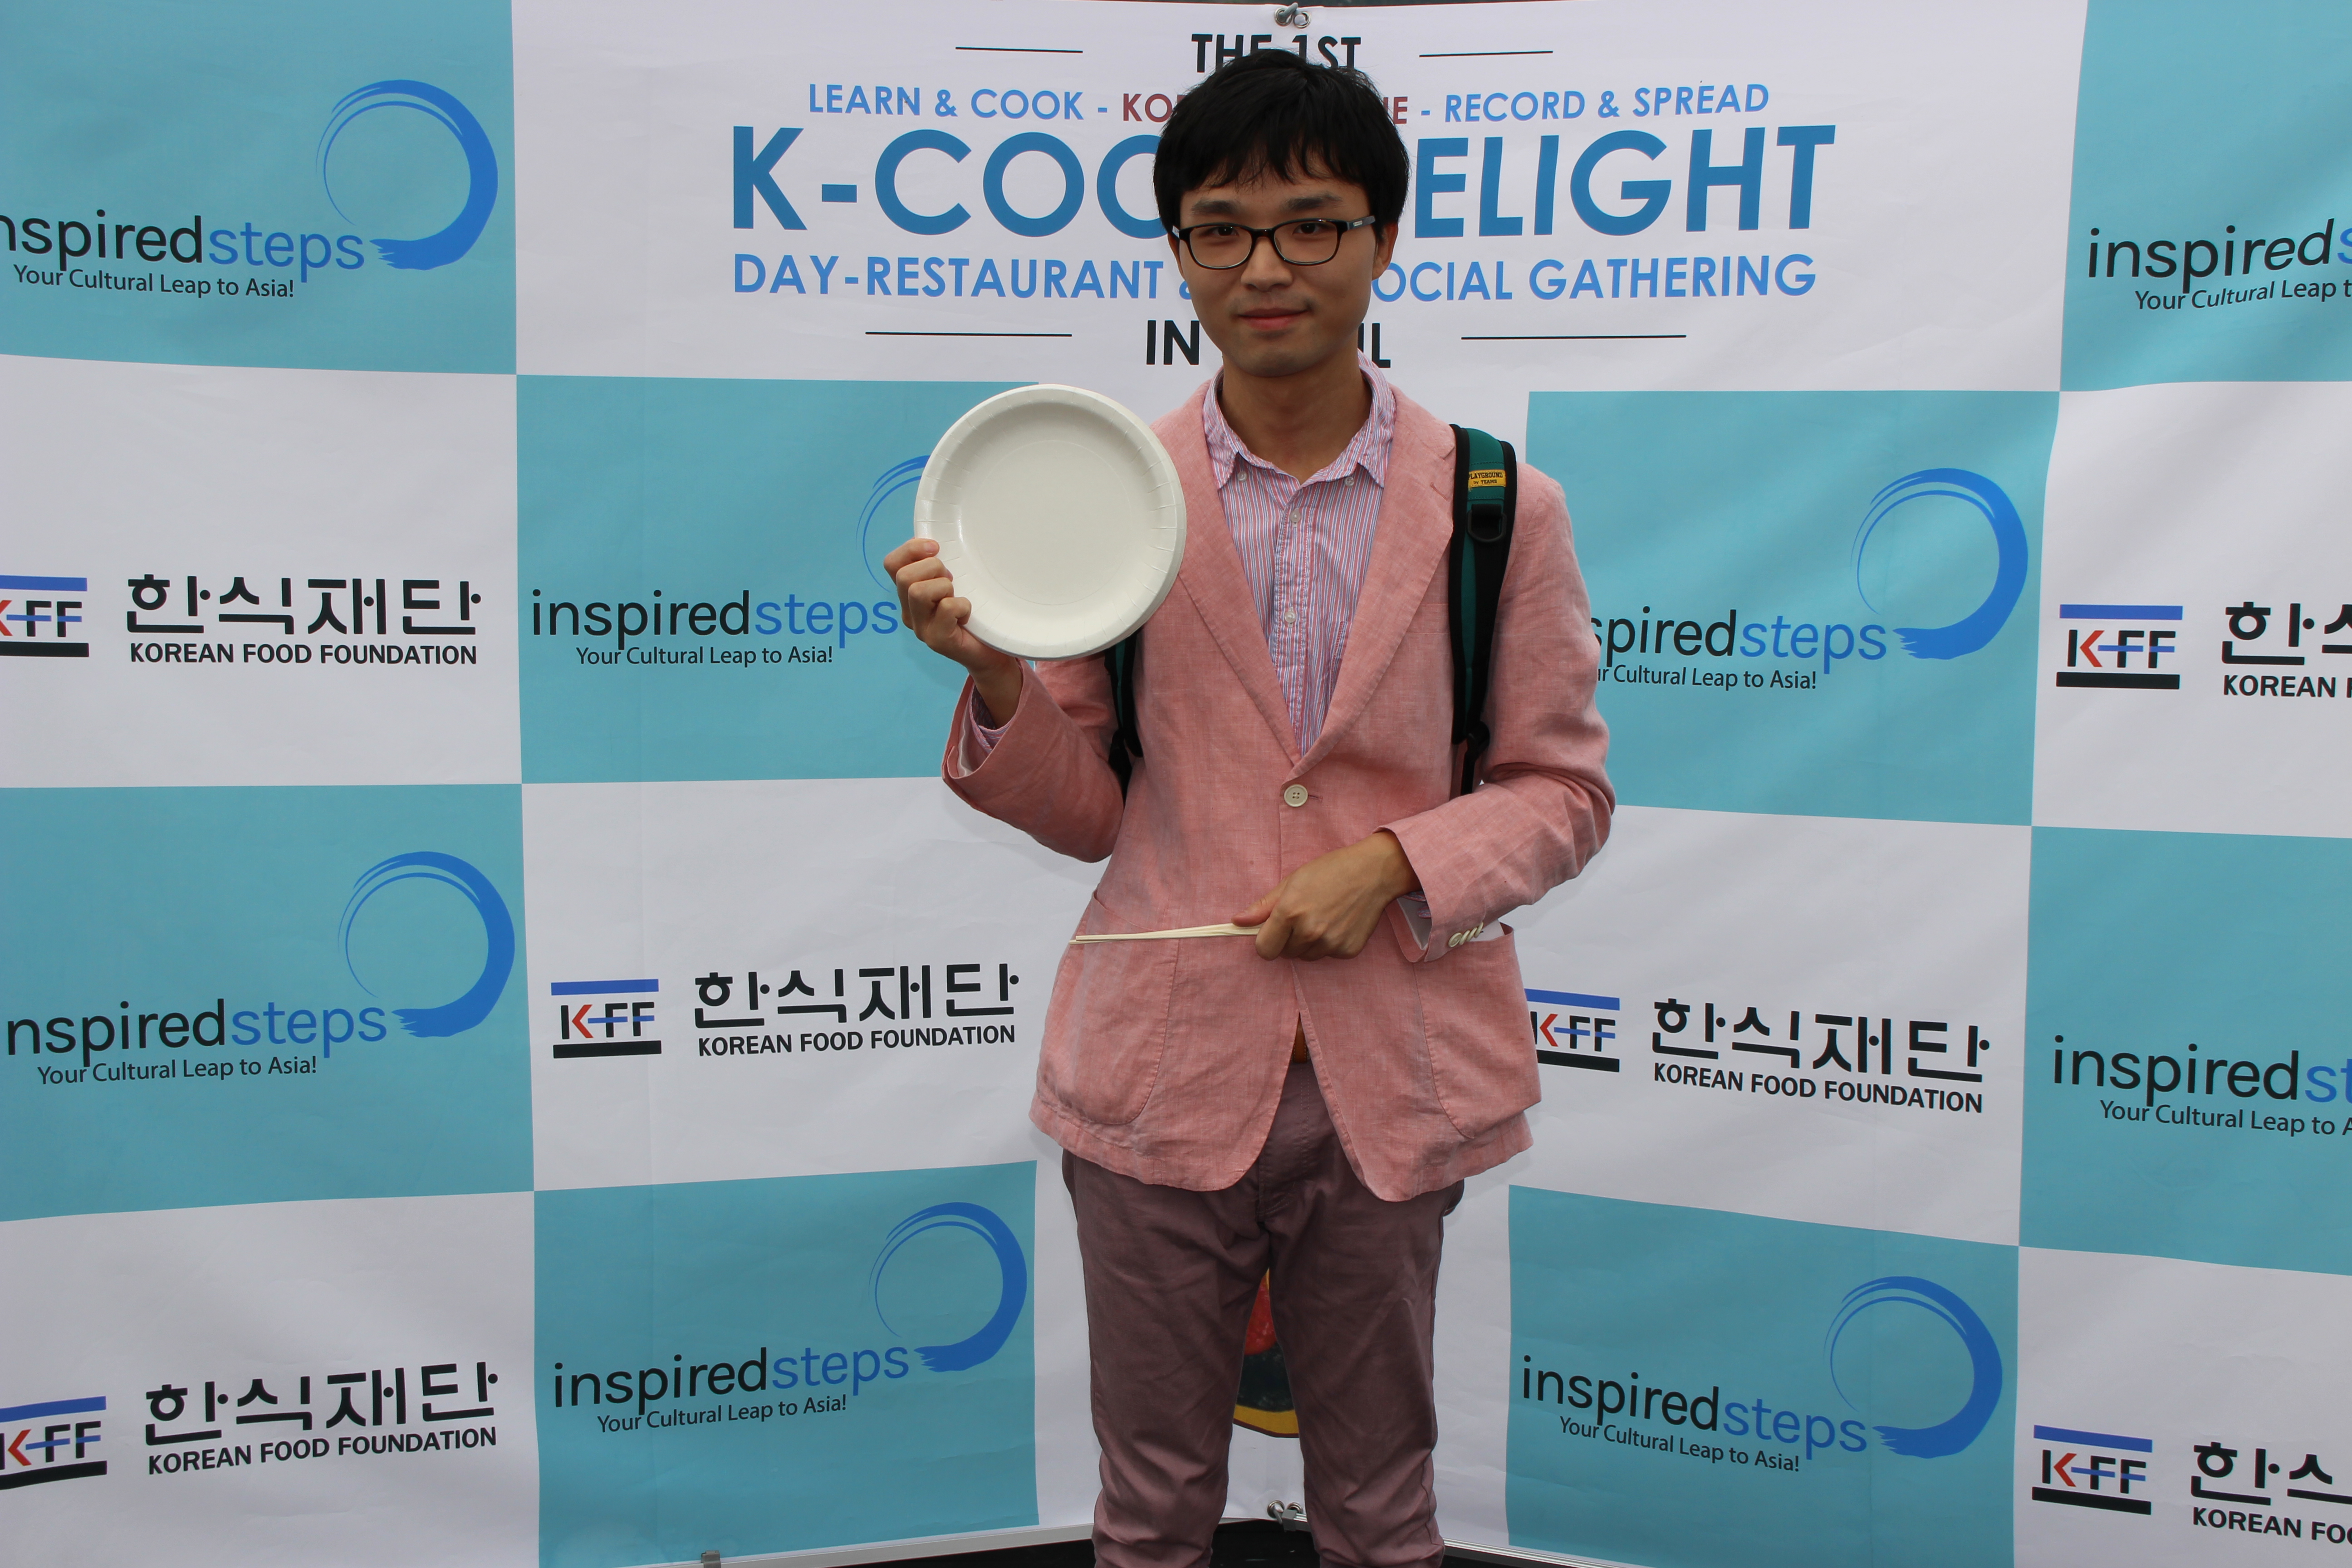 The 1st K-COOK DELIGHT in Seoul韩国美食大赛